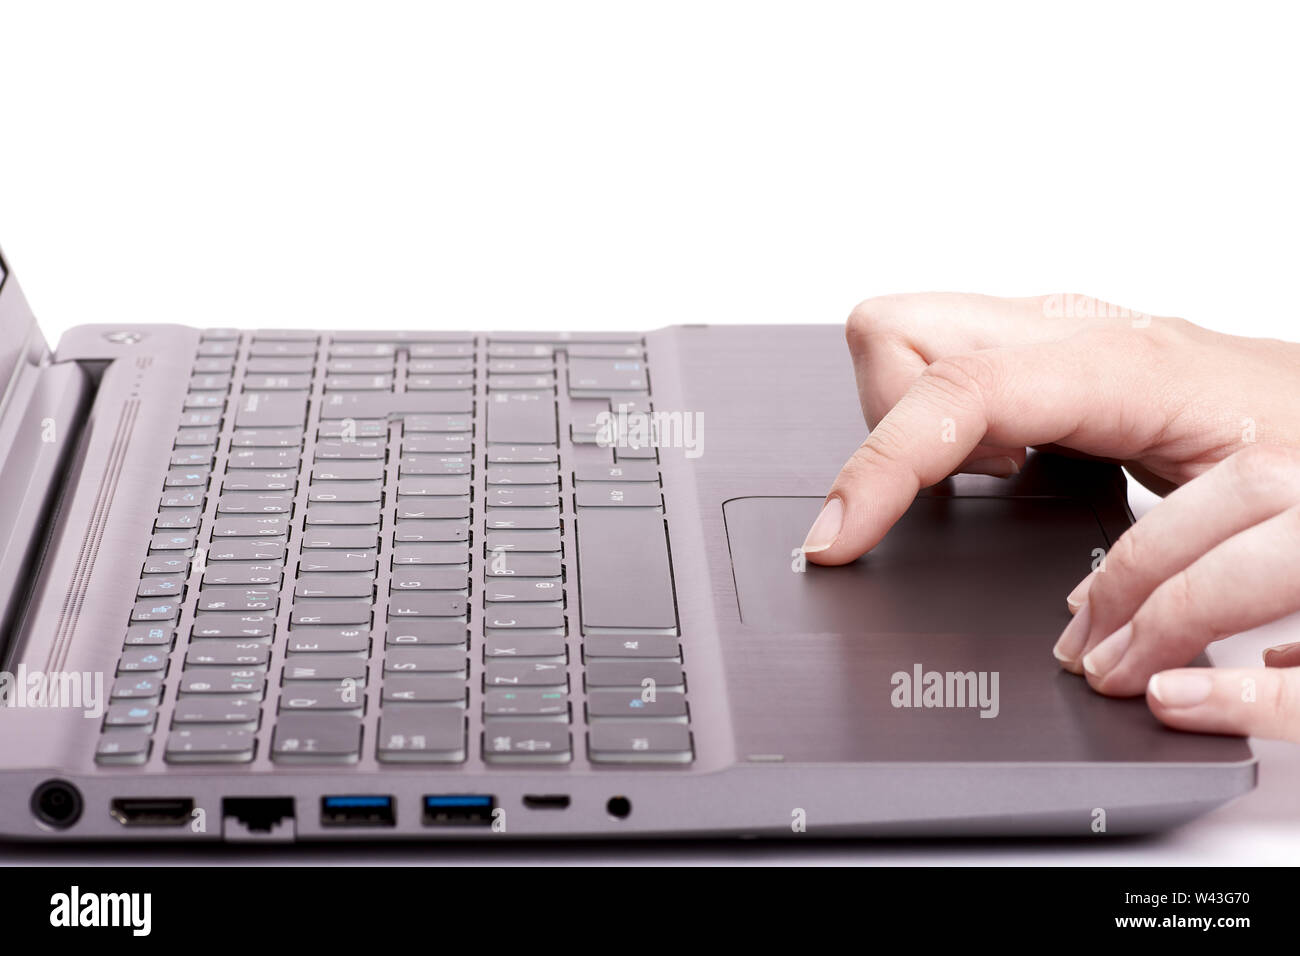 Jeune femme part travailler sur un ordinateur portable d'argent avec touchpad clavier noir. Isolé sur fond blanc. Banque D'Images